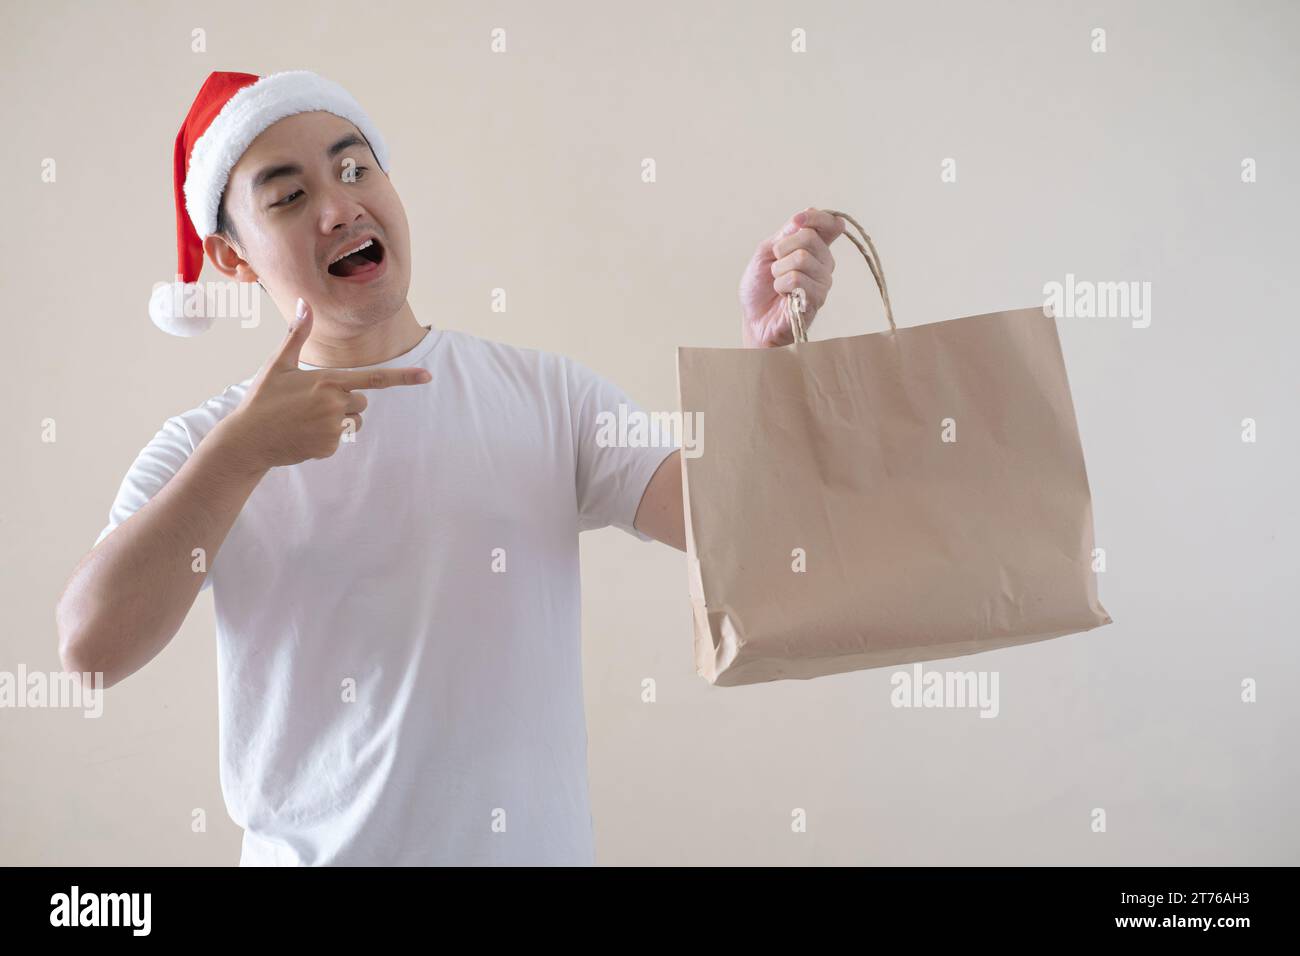 Der junge asiatische Weihnachtsmann zeigt auf die Einkaufstasche auf isoliertem beigefarbenem Hintergrund. Weihnachtskonzept. Stockfoto